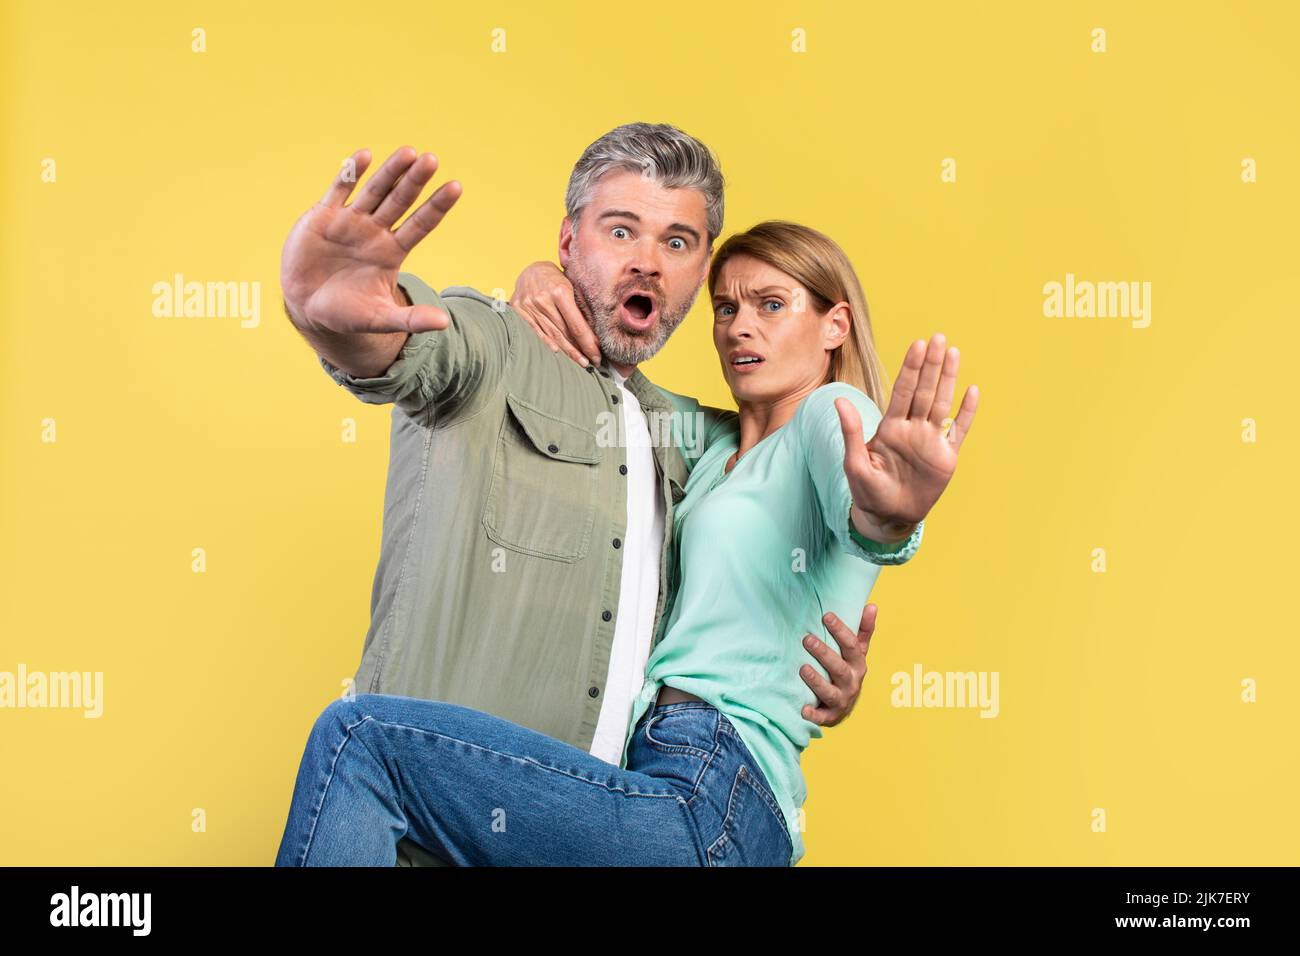 Guide d'utilisation Portrait de conjoints d'âge moyen effrayés hurlant et gesturant arrêt, femme sautant sur mari, regardant l'appareil photo Banque D'Images